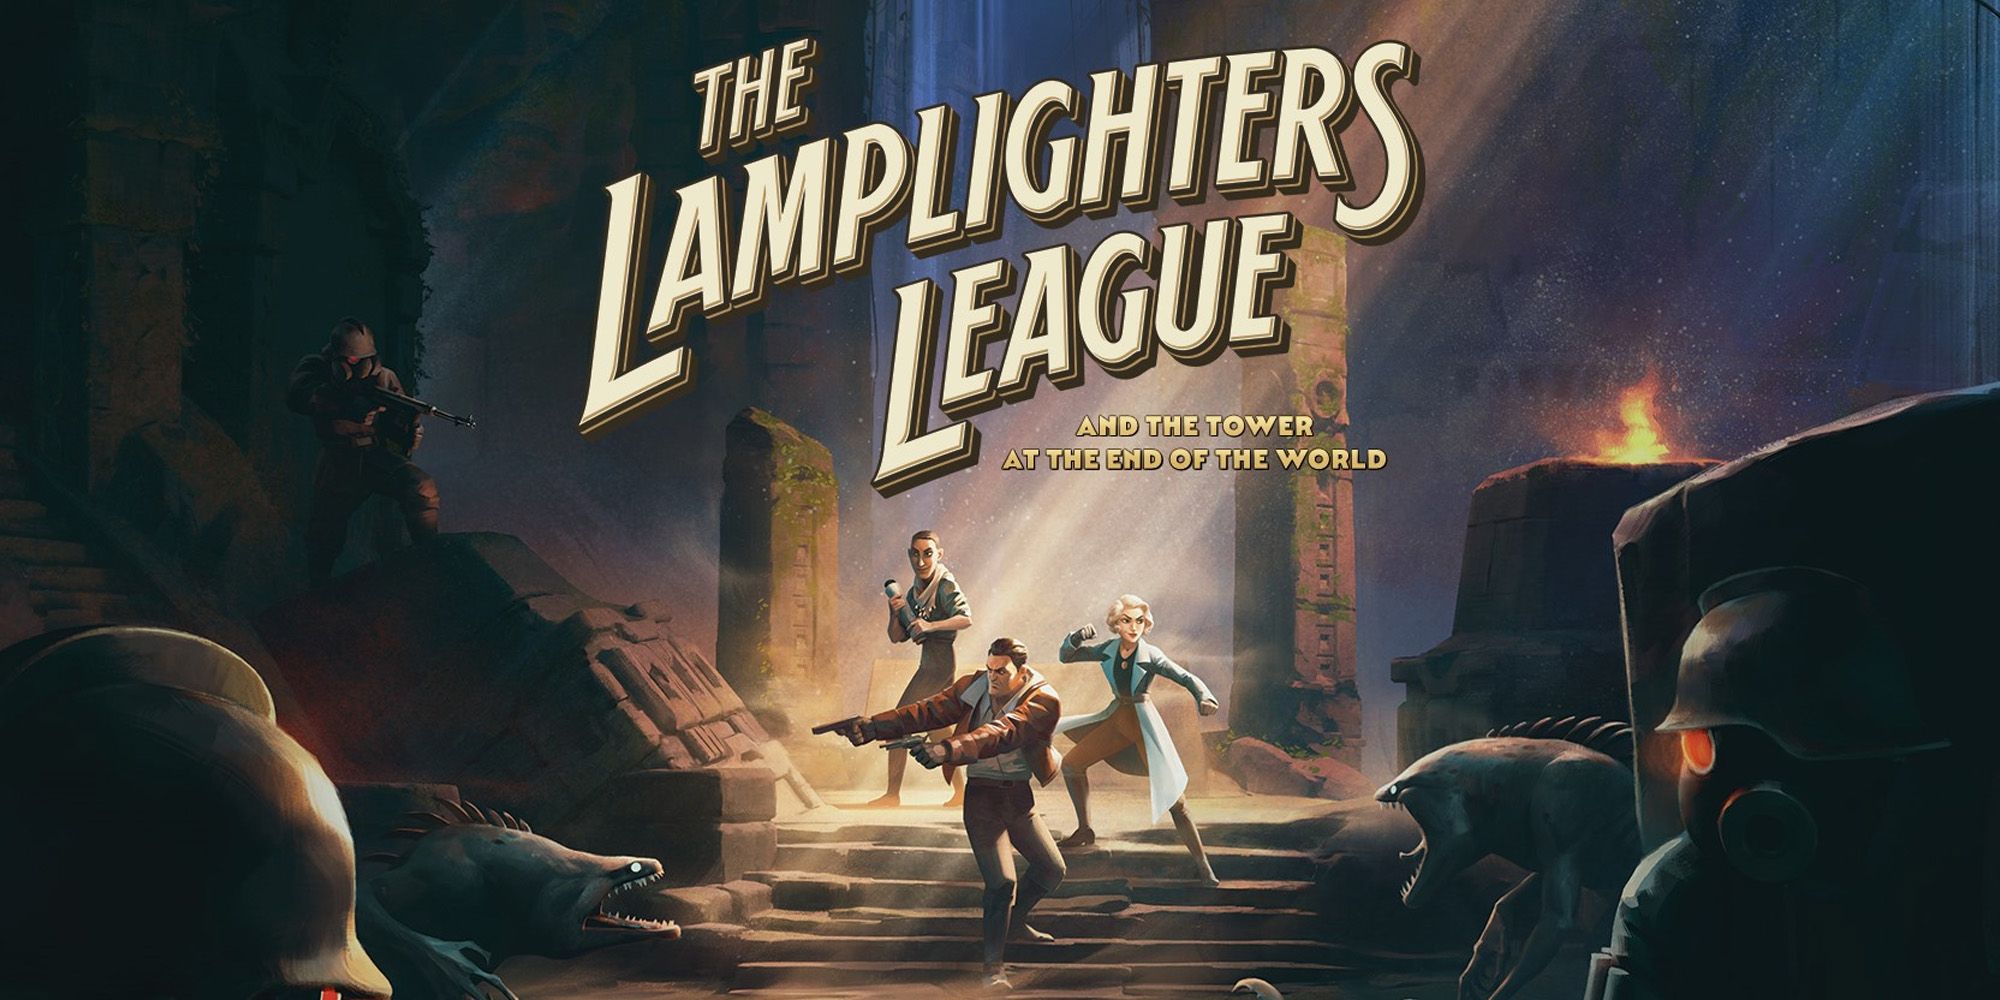 "Una aventura táctica pulida" - Revisión de la Liga Lamplighters